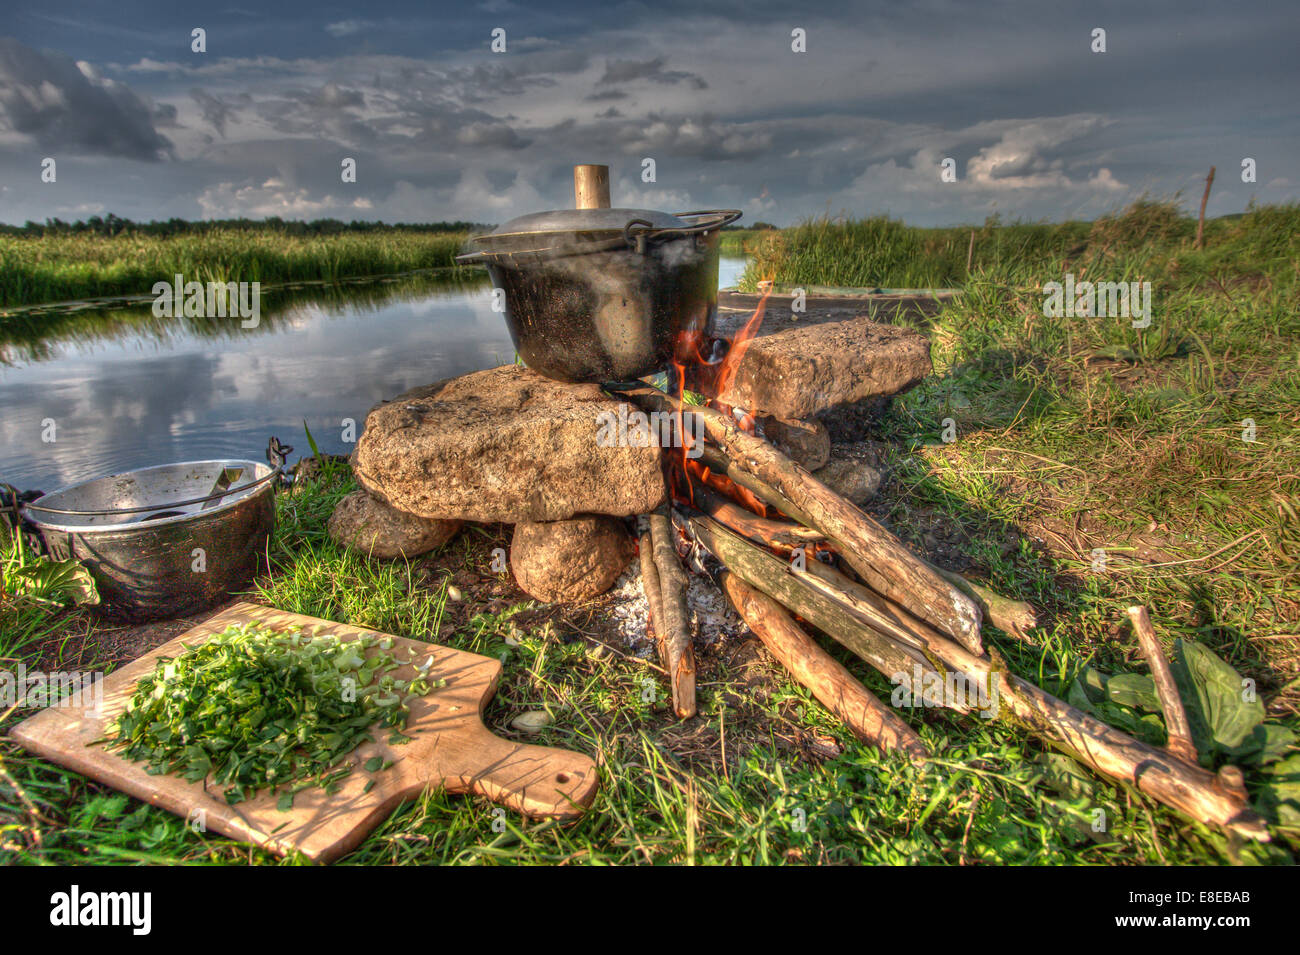 Cooking la comida en un hervidor de agua sobre el fuego de campamento:River Rafting expedición. Polonia Foto de stock